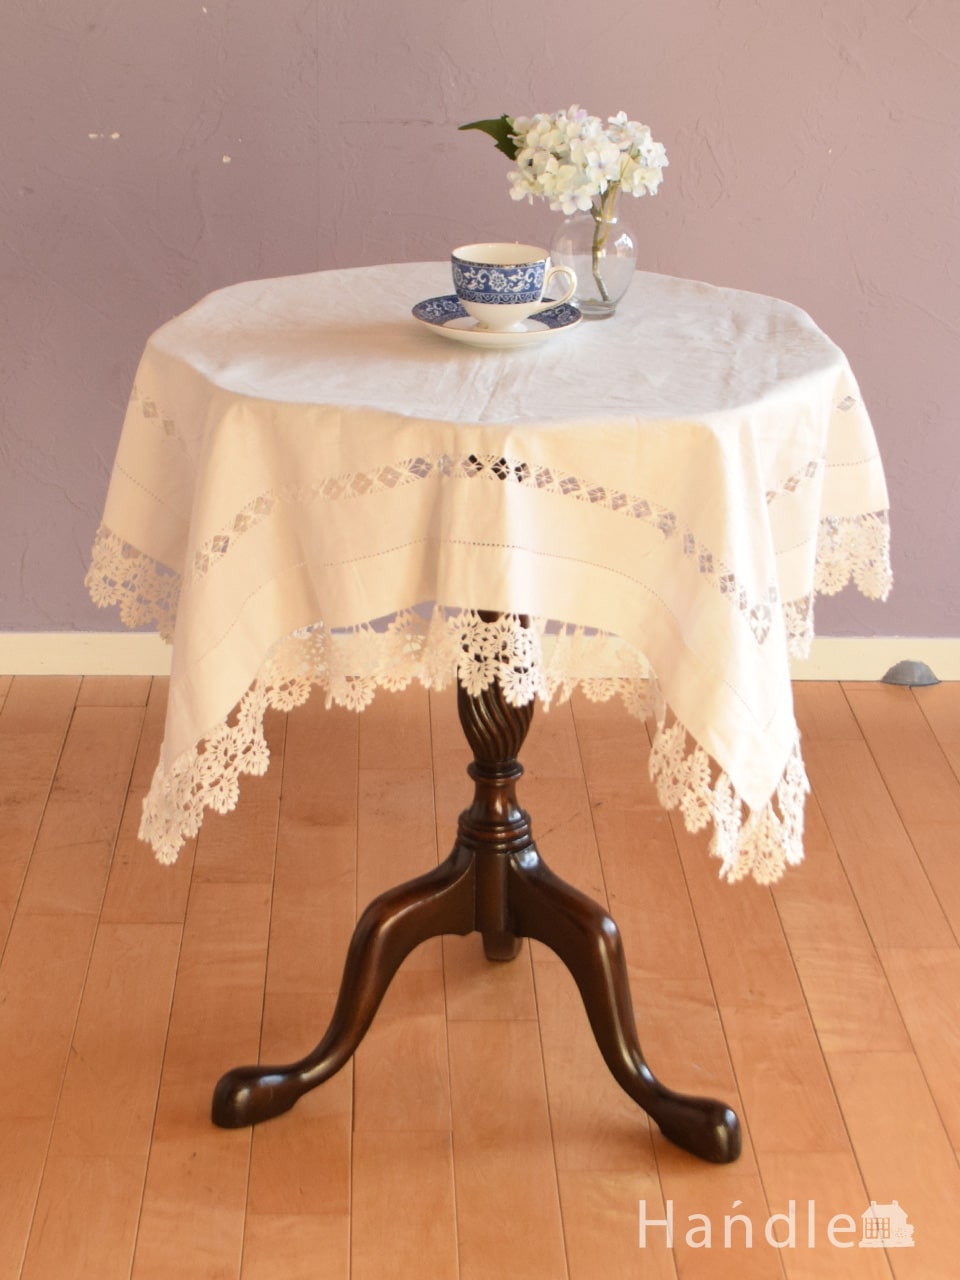 アンティークの優雅なテーブルクロス、華やかなニードルポイントレースのクロス (k-4335-z)